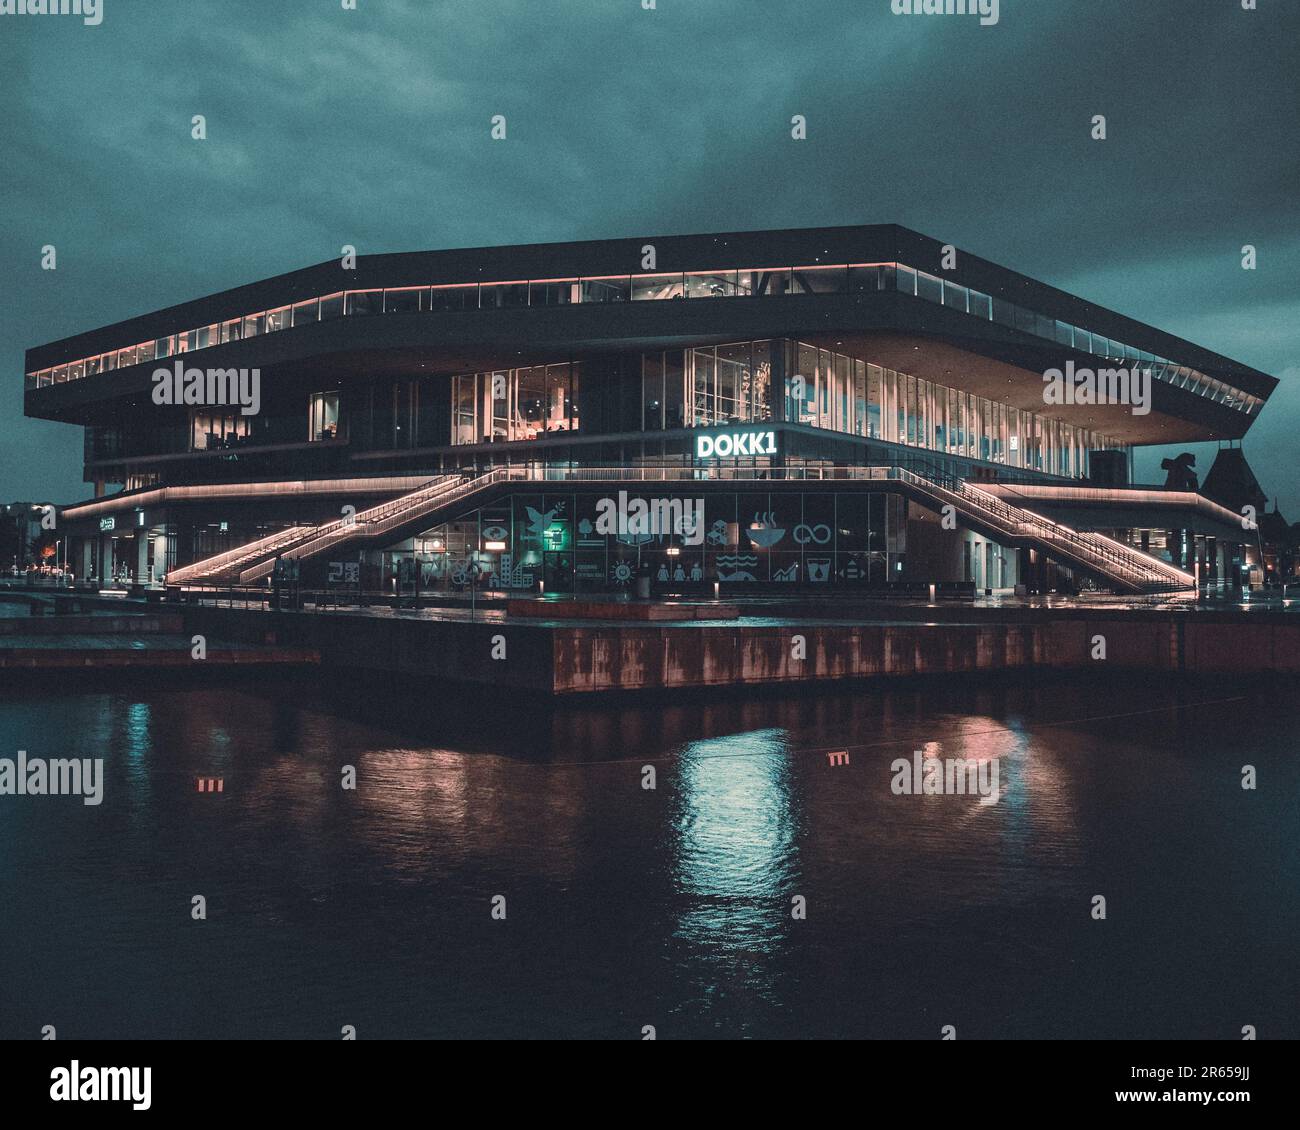 Questa immagine è un'immagine notturna di un edificio con le sue luci che brillano nell'oscurità ad Aarhus, Danimarca Foto Stock